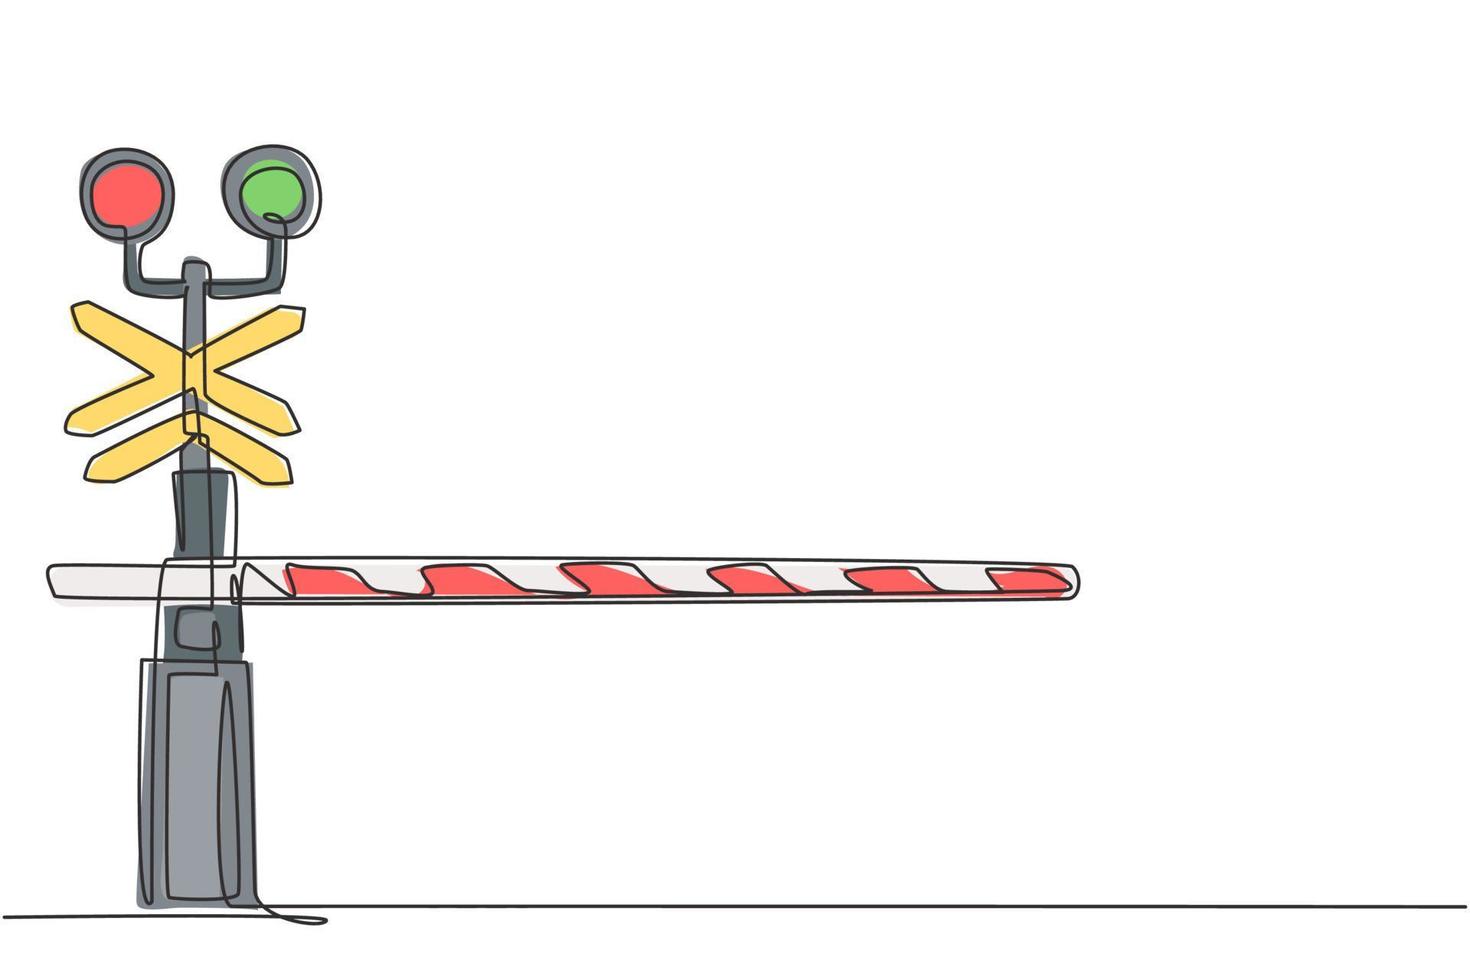 Una línea continua dibujando una barrera ferroviaria con franjas, letreros y luces de advertencia cierra los cruces ferroviarios para evitar que entren vehículos. Ilustración gráfica de vector de diseño de dibujo de una sola línea.